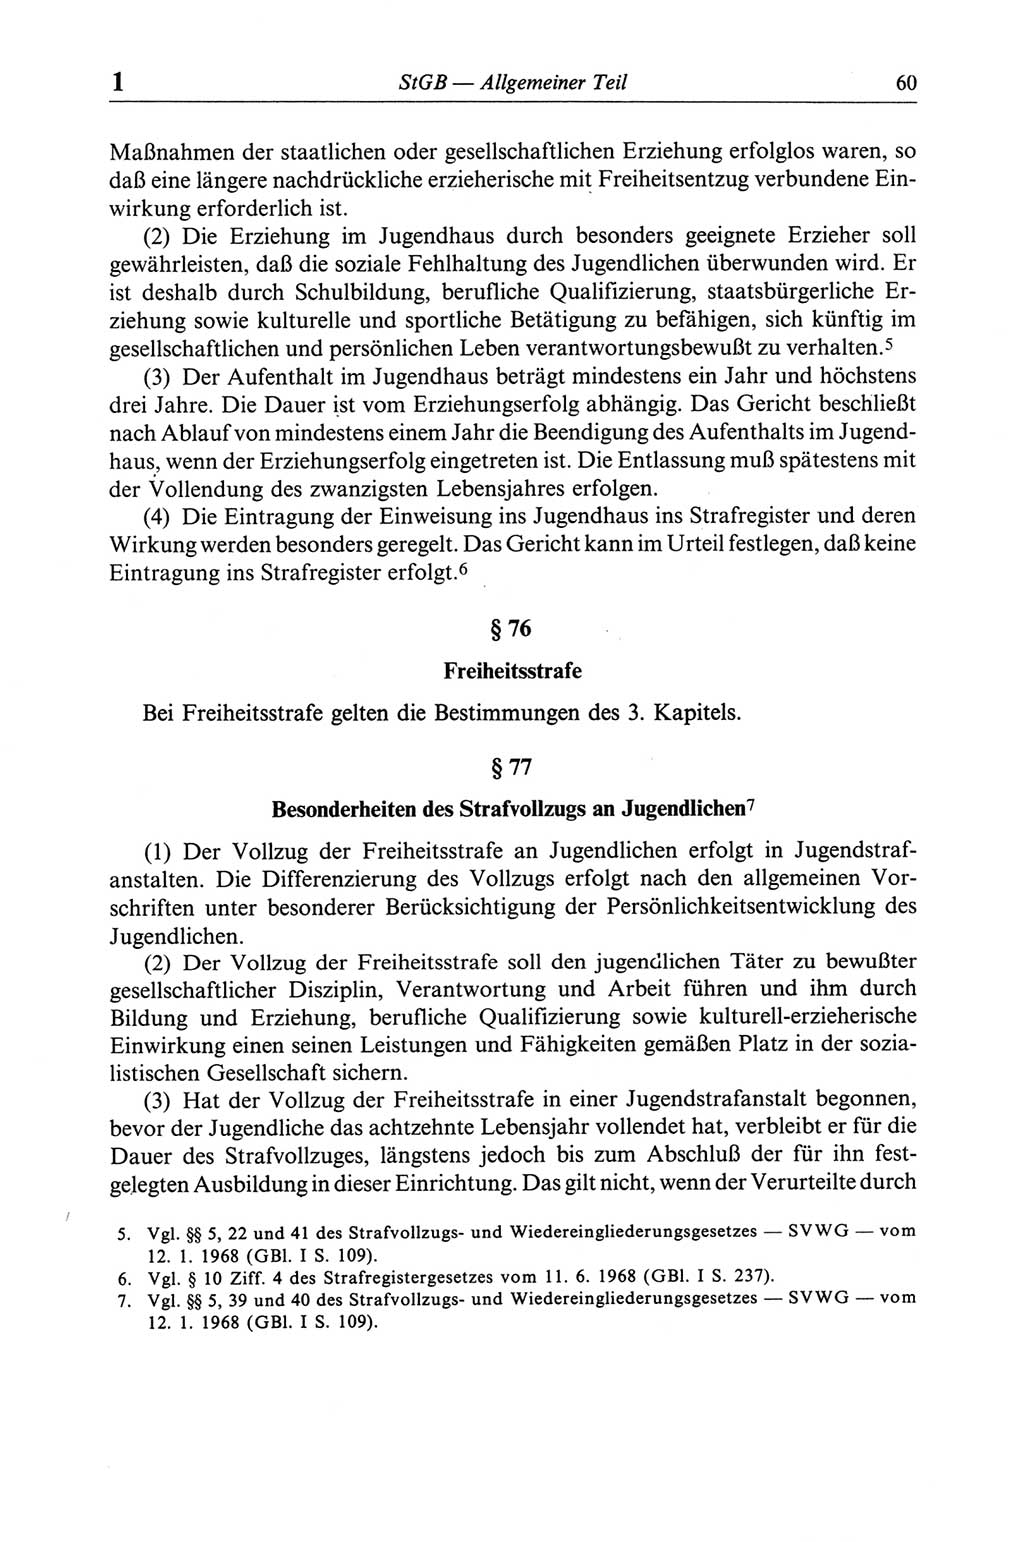 Strafgesetzbuch (StGB) der Deutschen Demokratischen Republik (DDR) und angrenzende Gesetze und Bestimmungen 1968, Seite 60 (StGB Ges. Best. DDR 1968, S. 60)